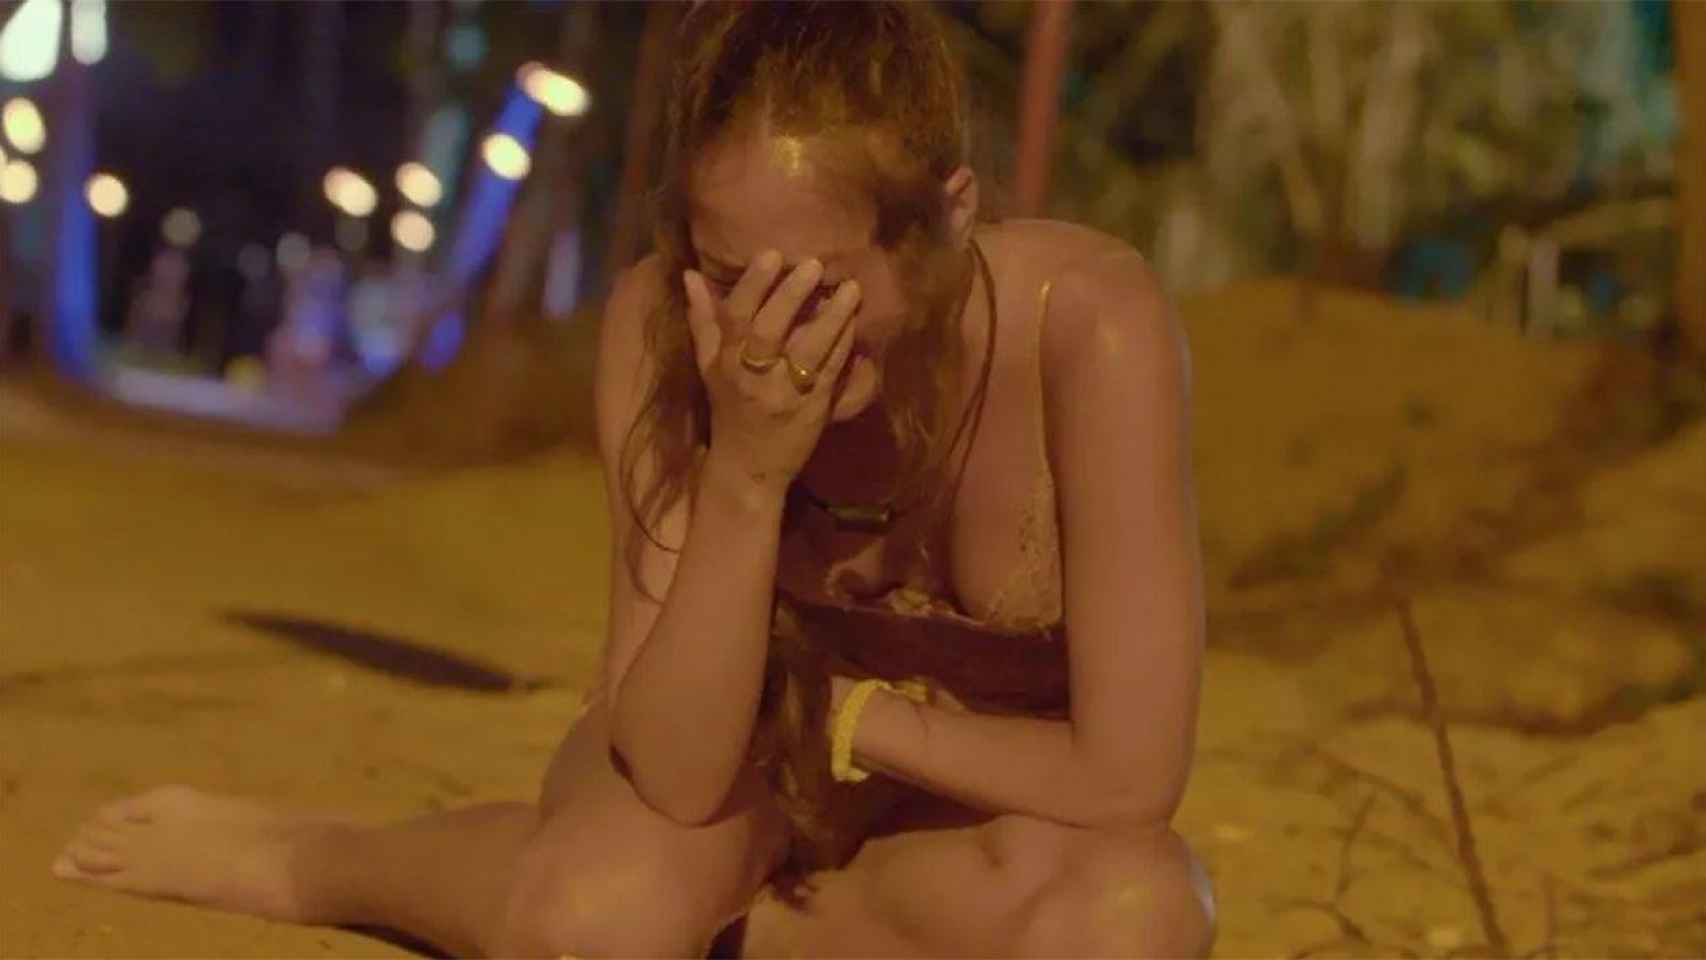 Melyssa rota de dolor en 'La isla de las tentaciones' / TELECINCO